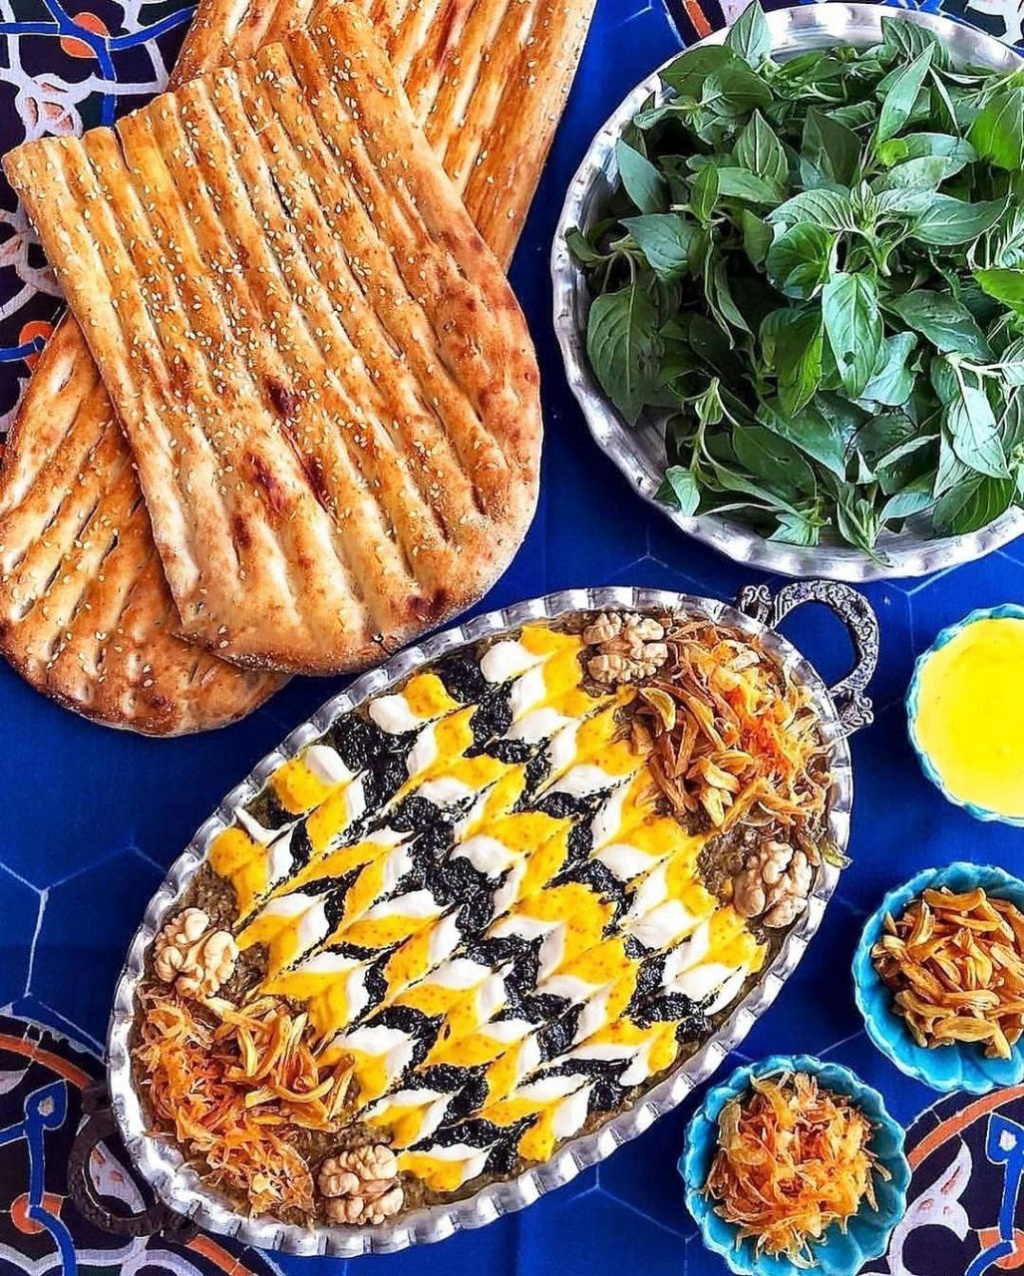 Кашк баклажан (Kashk bademjan) — это название еще одного вкусного иранского блюда Photo270